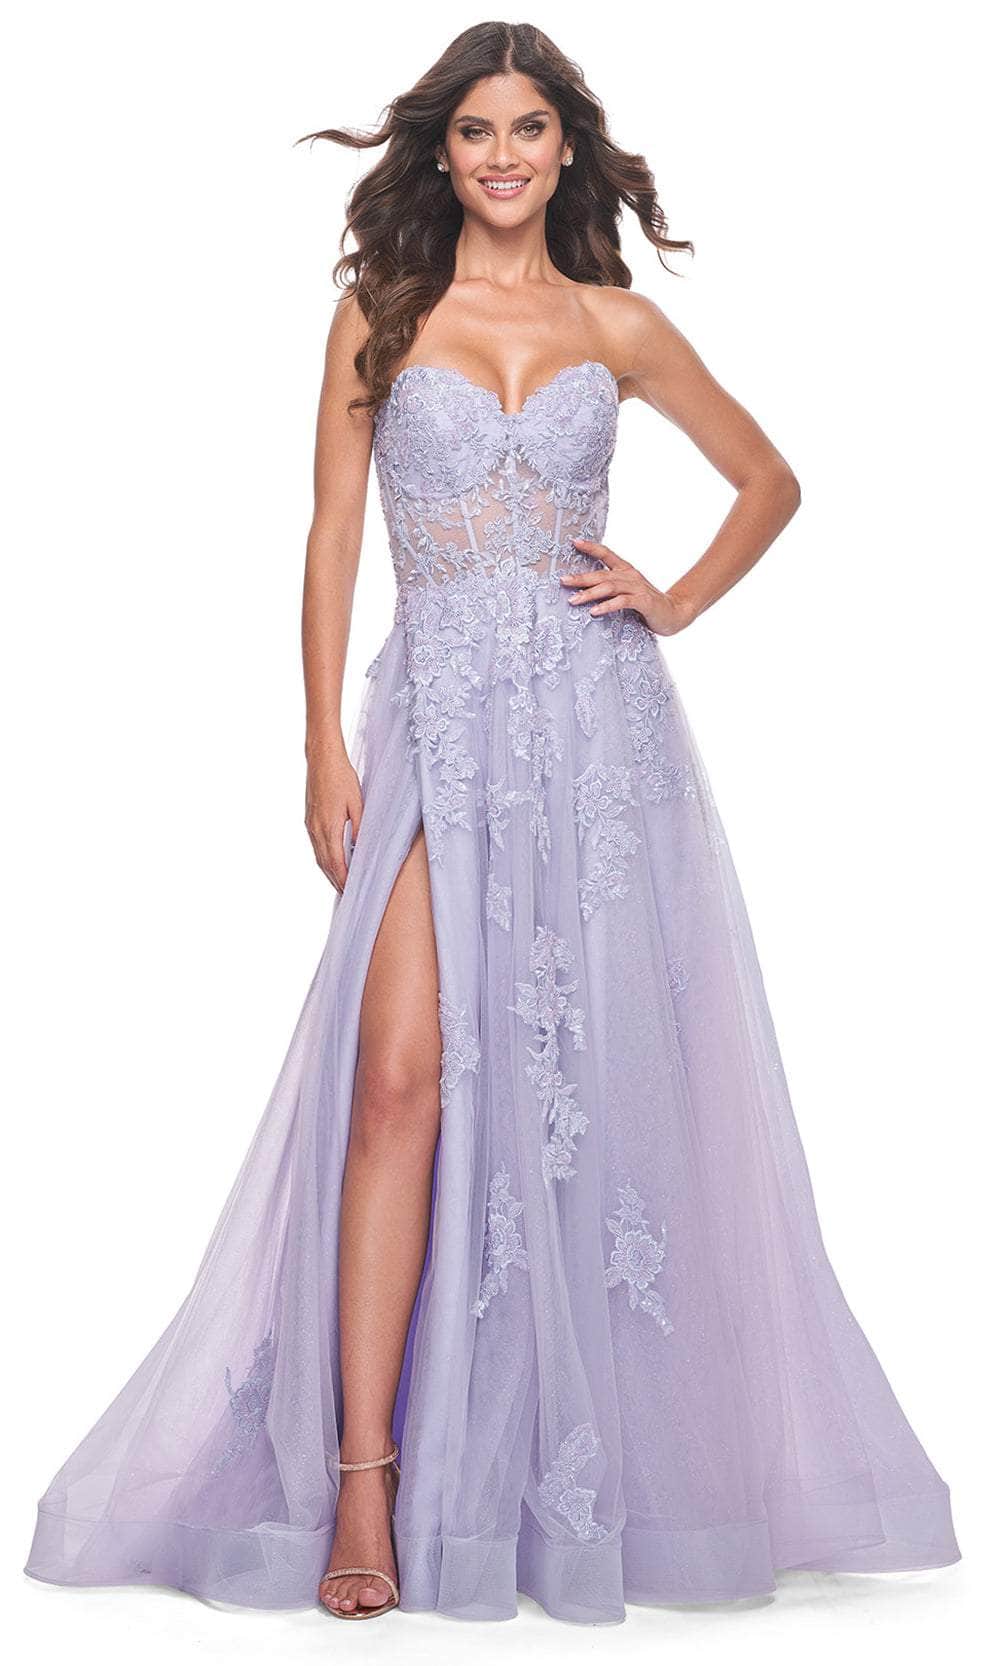 La Femme 32145 - Sweetheart Applique Prom Dress
